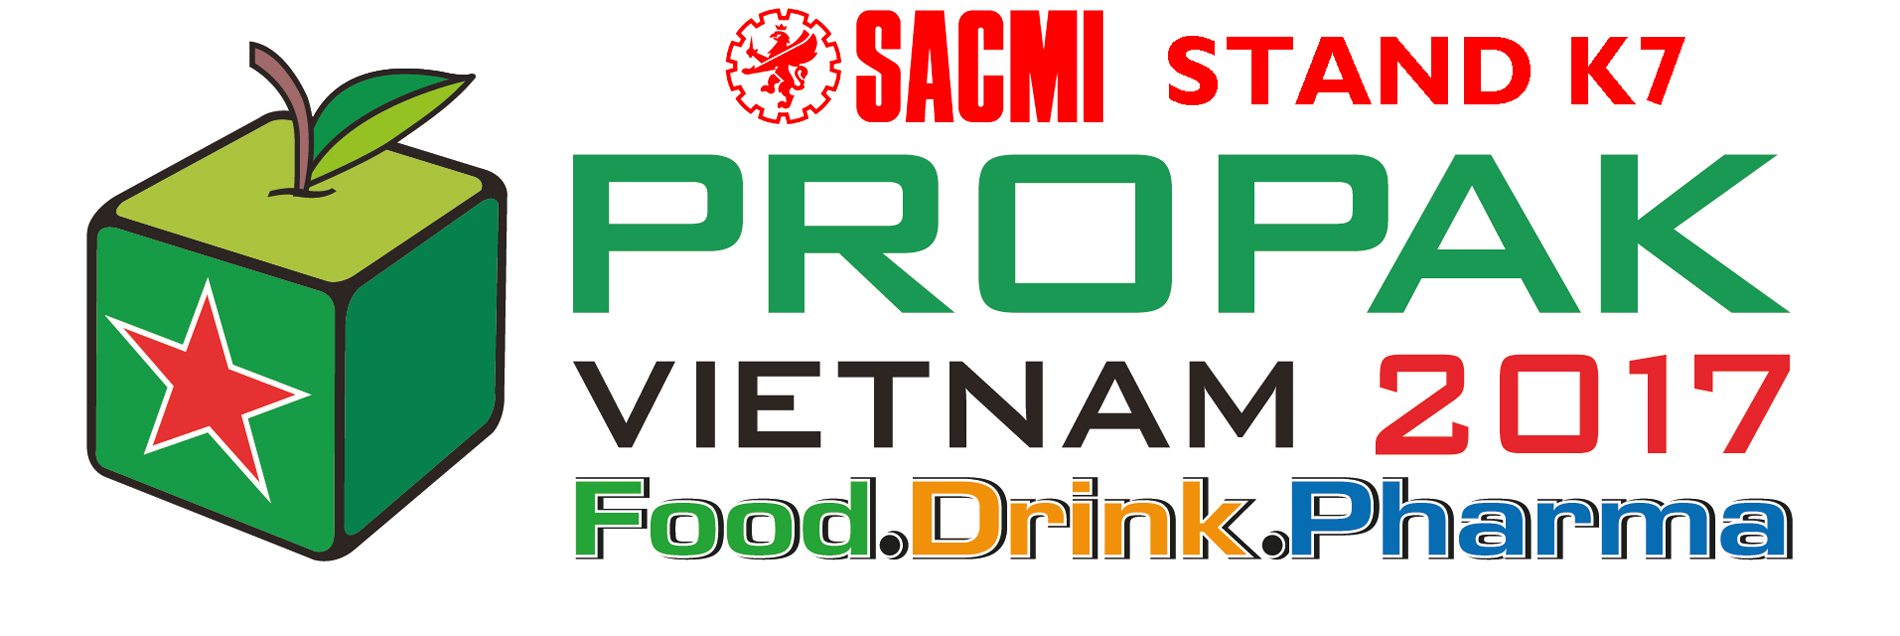 Il Vietnam cresce ancora e ospita l’eccellenza tecnologica di casa Sacmi